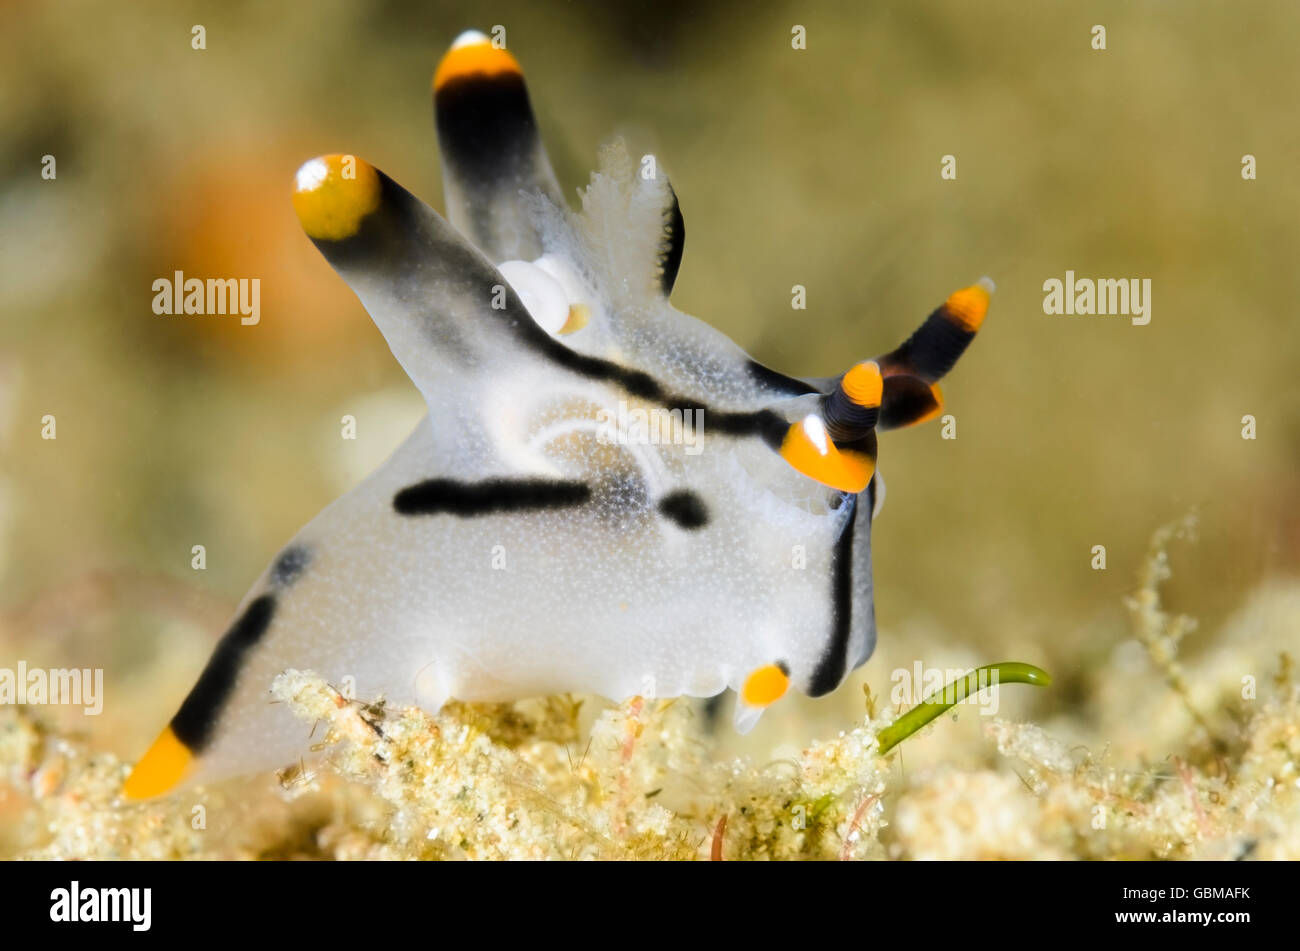 Limace de mer ou Thecacera picta, nudibranches, avec parasite copépode. Le cas des oeufs du copépode peut être vu dans les branchies. Banque D'Images